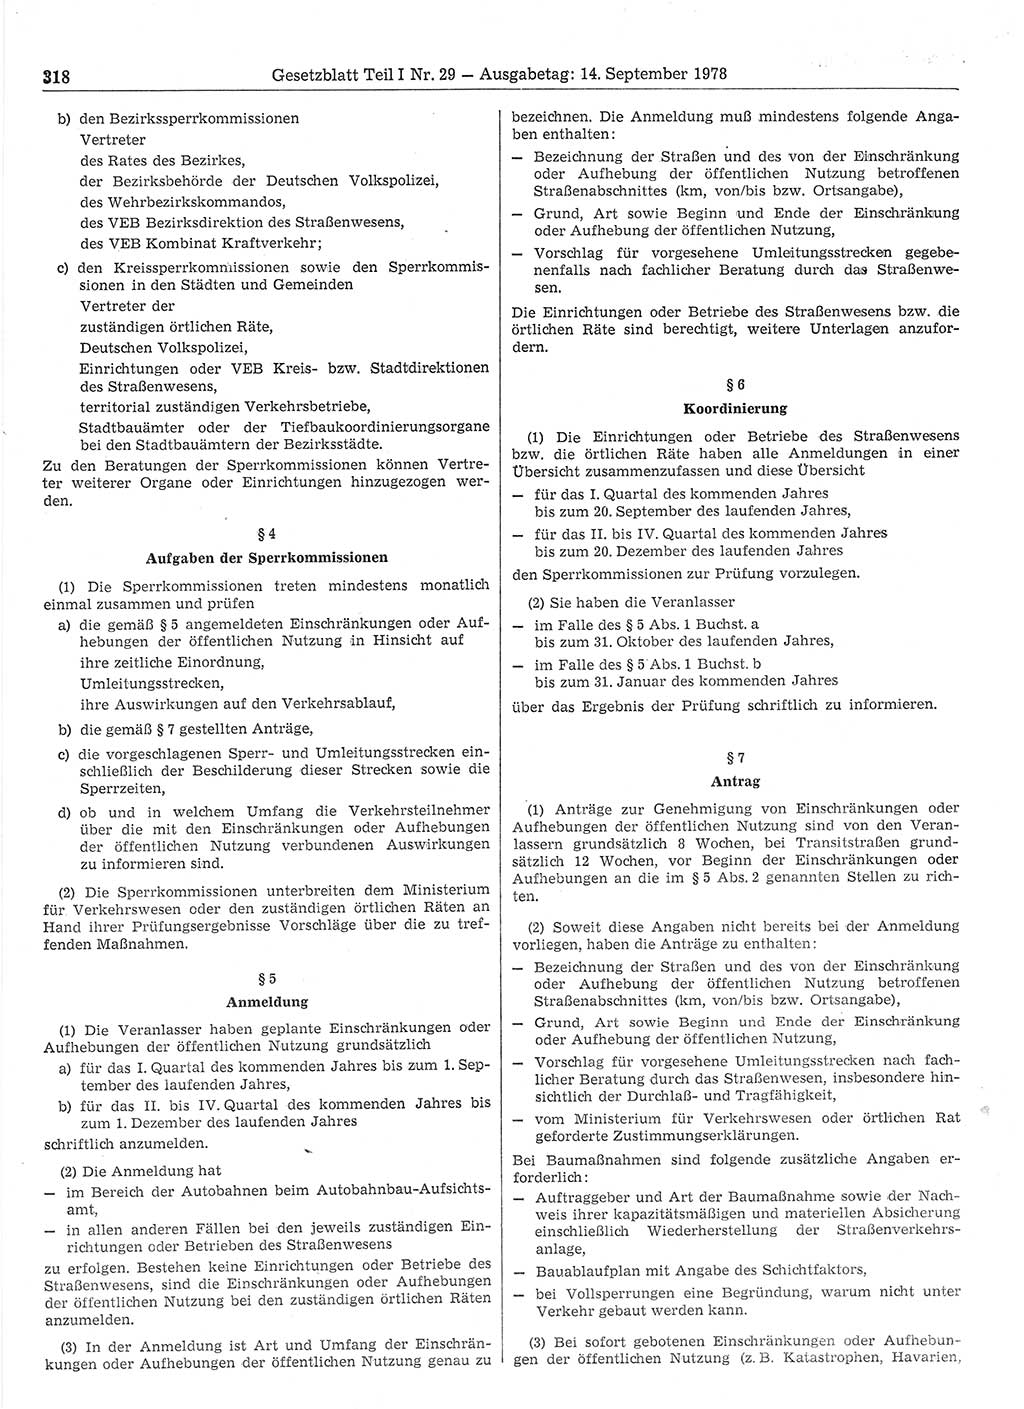 Gesetzblatt (GBl.) der Deutschen Demokratischen Republik (DDR) Teil Ⅰ 1978, Seite 318 (GBl. DDR Ⅰ 1978, S. 318)